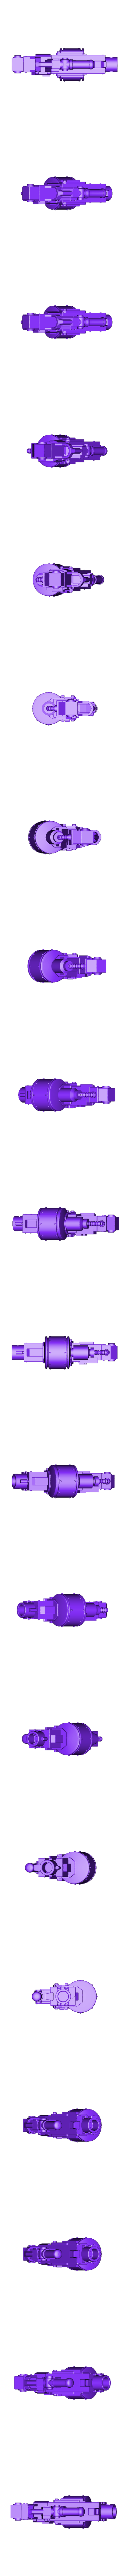 HBolter_NoHands.stl Файл STL Третье тяжелое оружие, установленное для новых парней Ереси・Шаблон для 3D-печати для загрузки, VitalyKhan